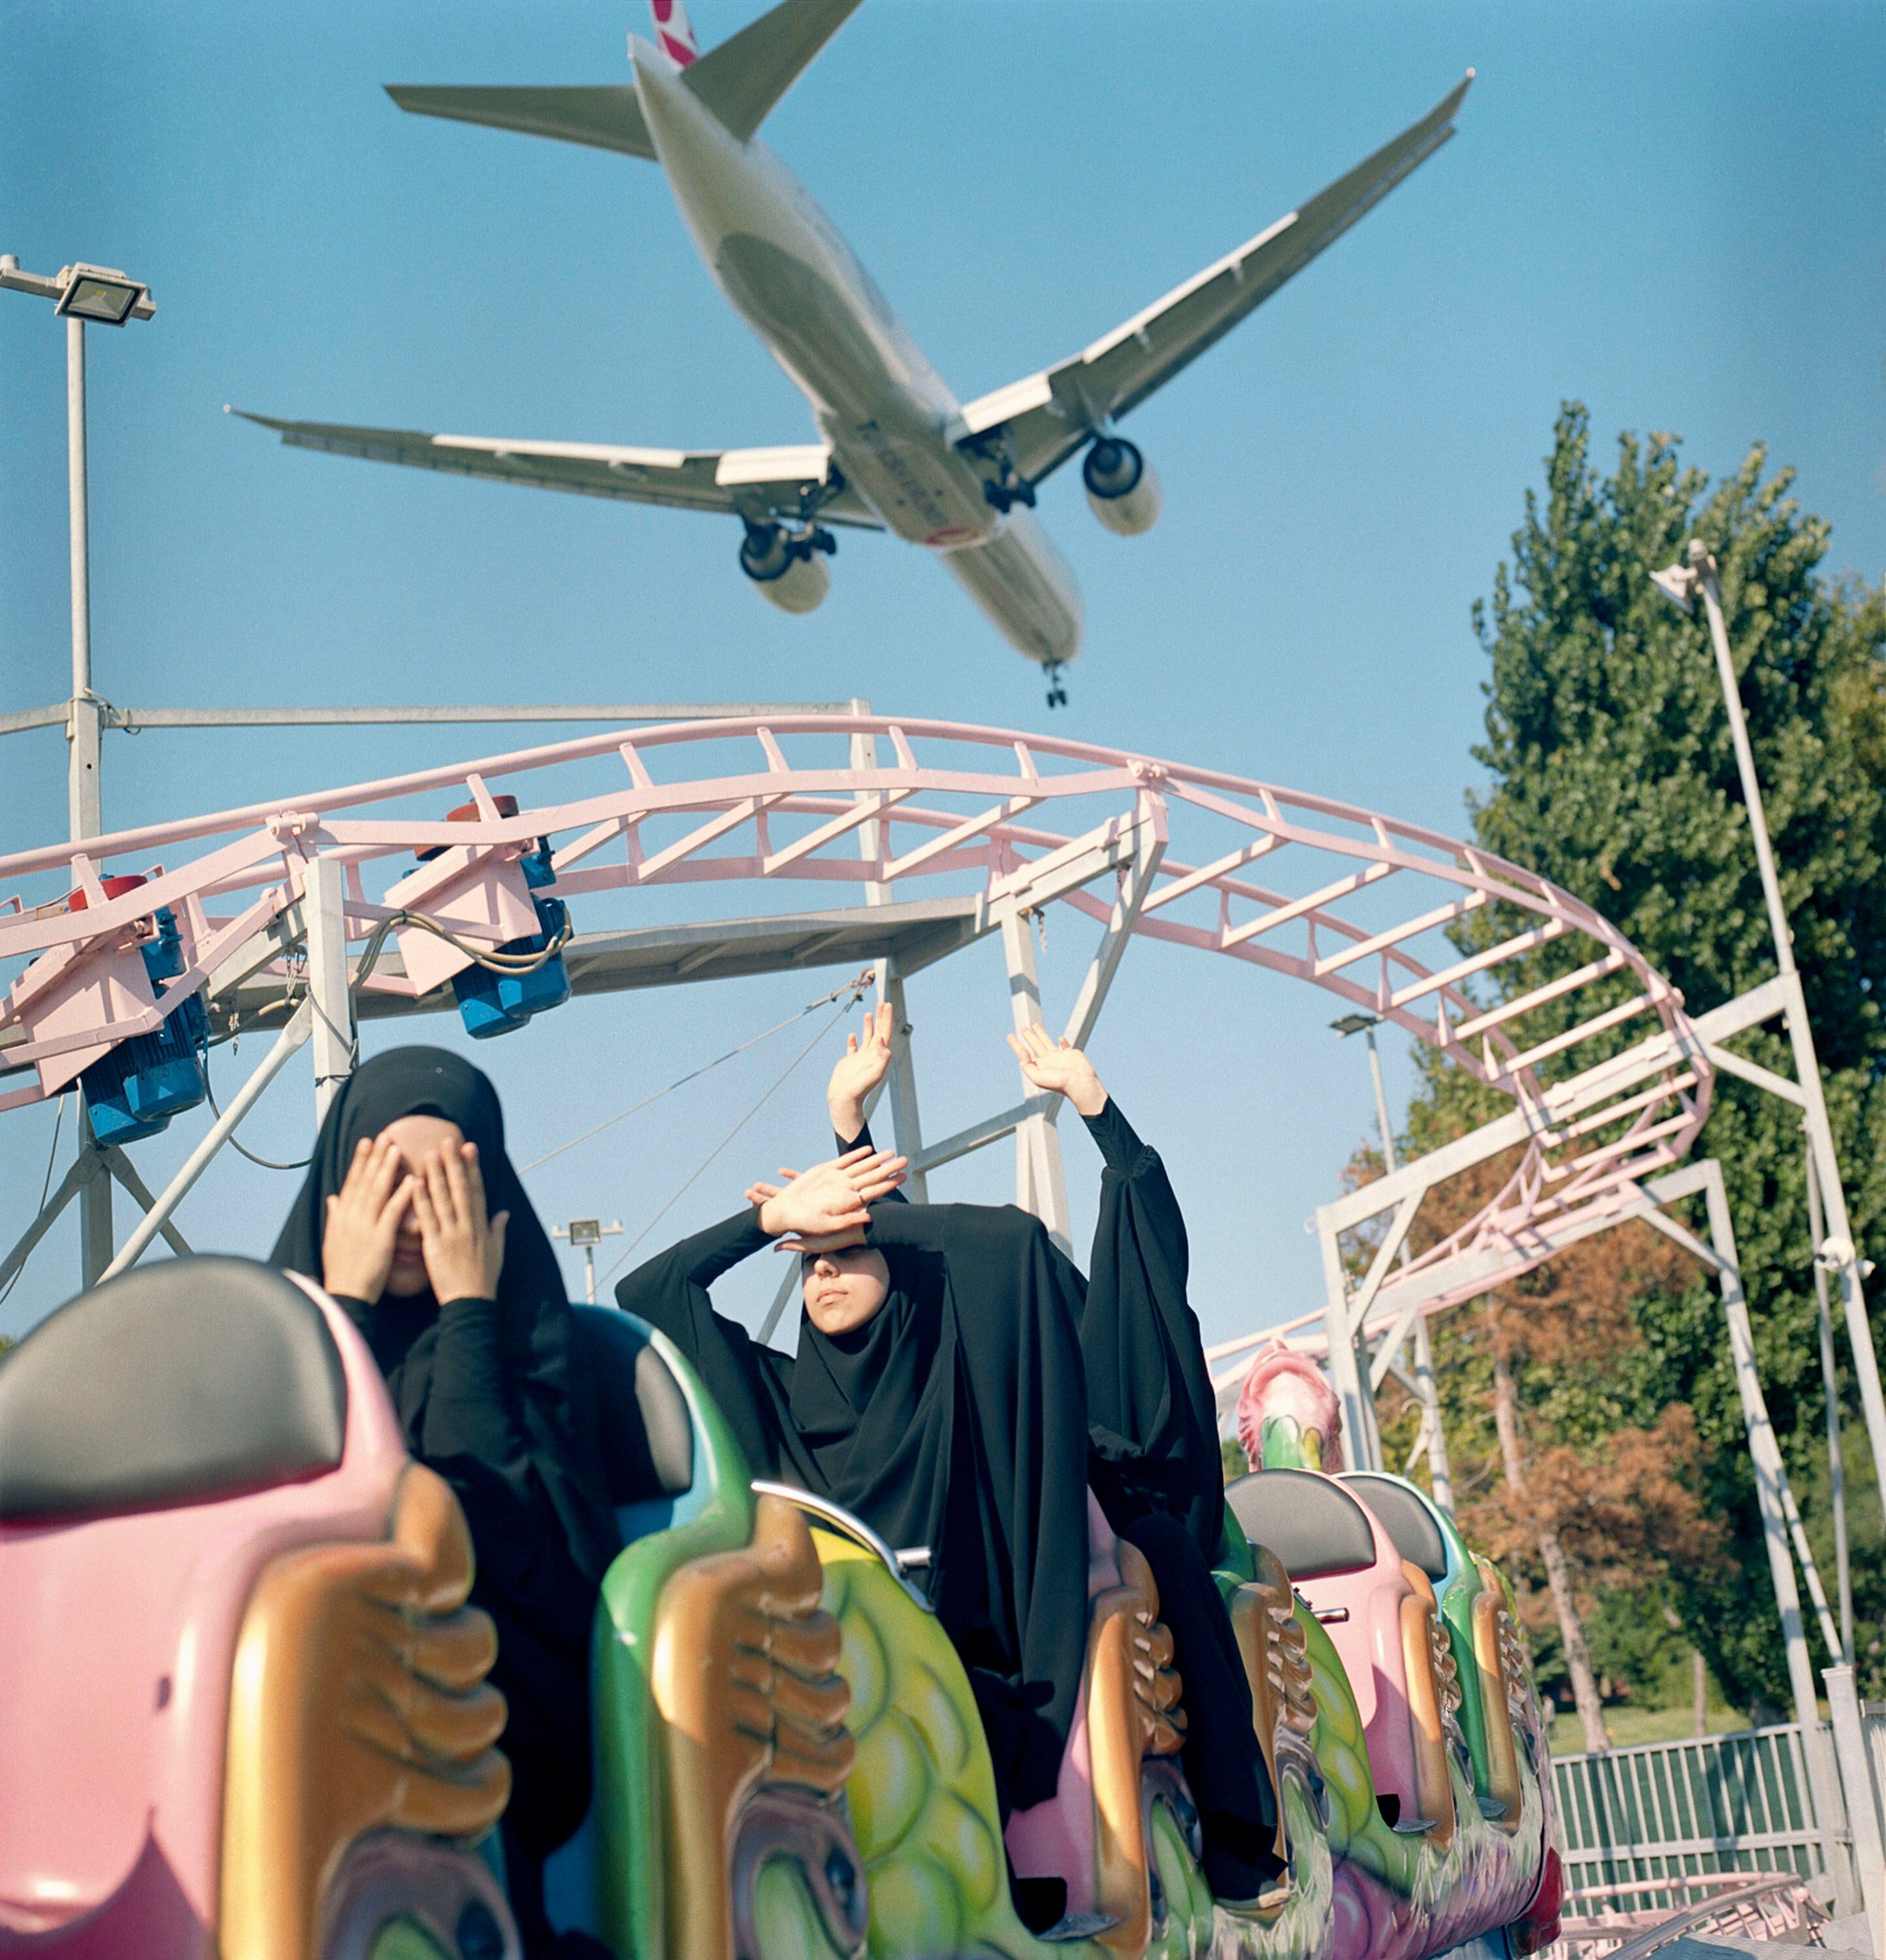 'Un avión sobrevuela a baja altura un parque de atracciones en Estambul'. Turquía. 29 de agosto, 2018. 